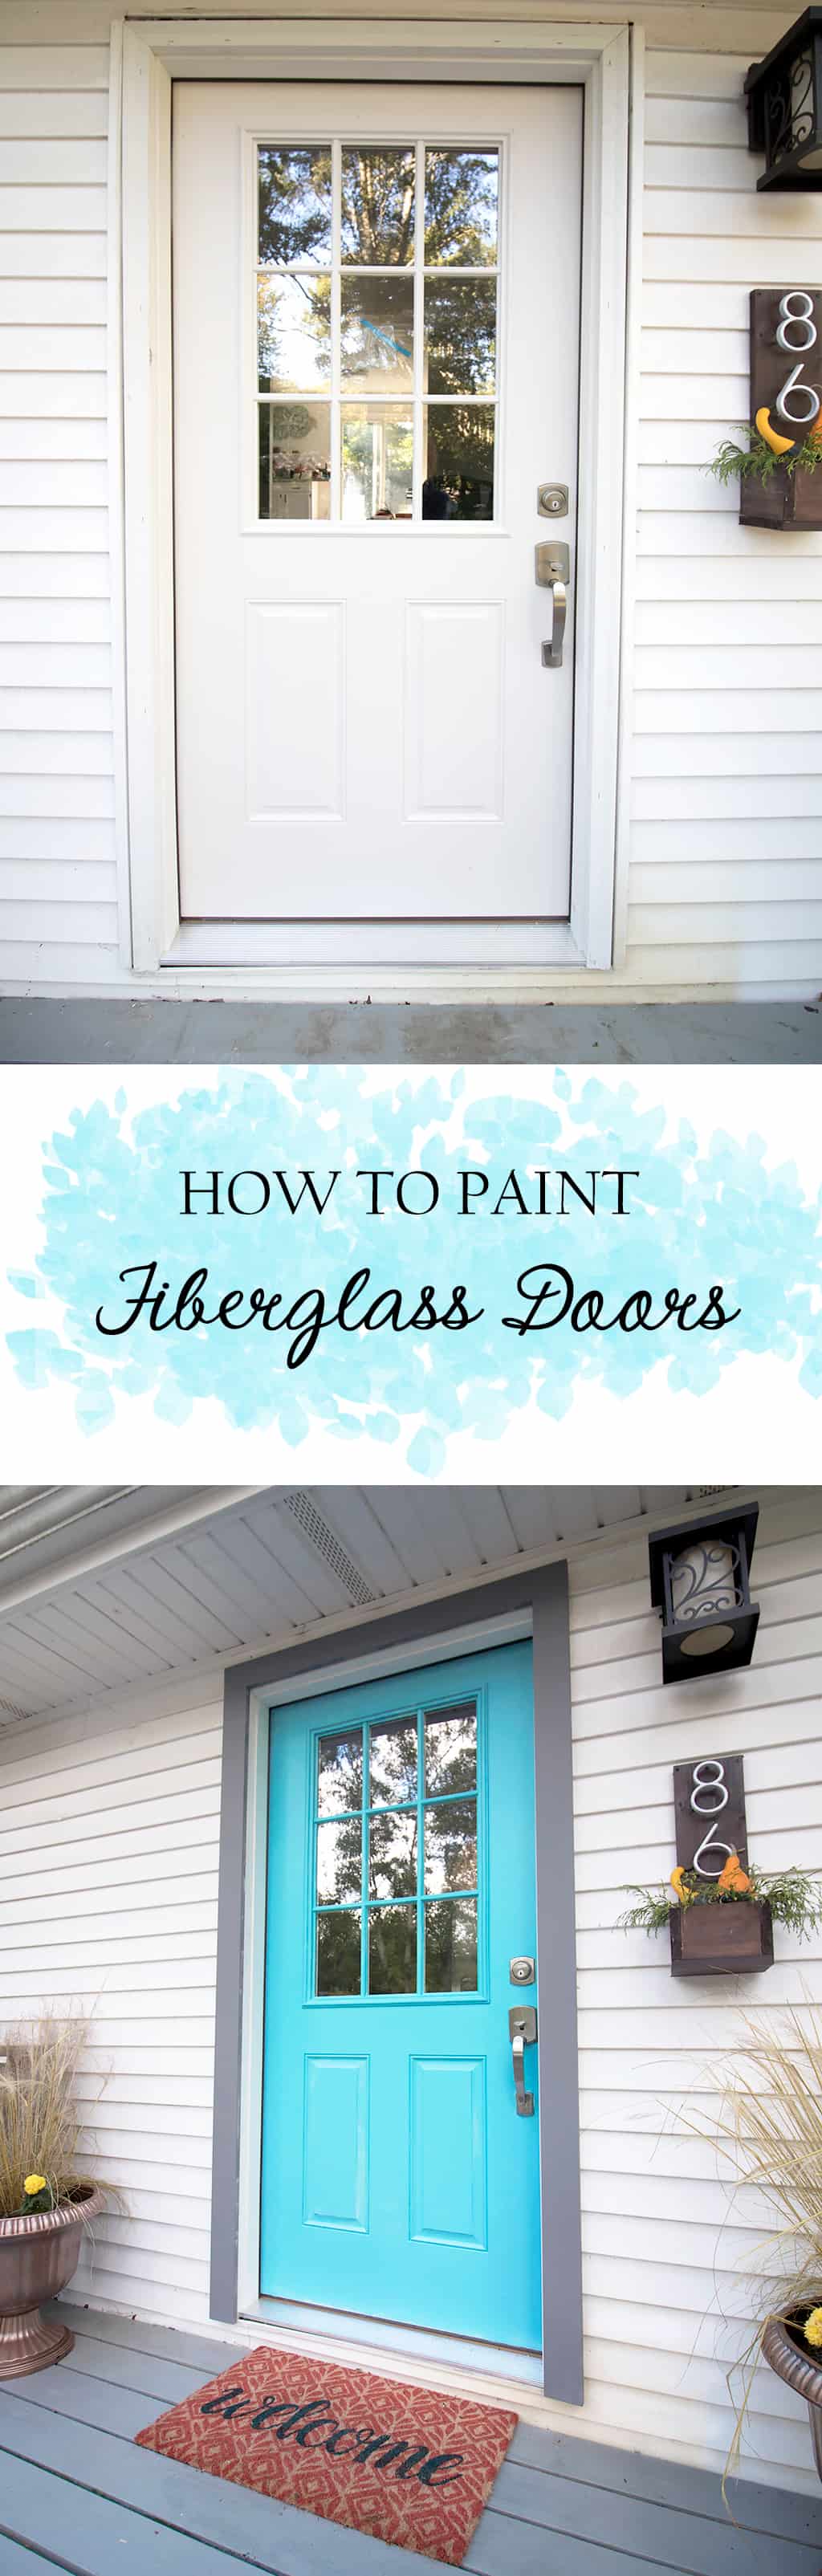 How to Paint Fiberglass Doors